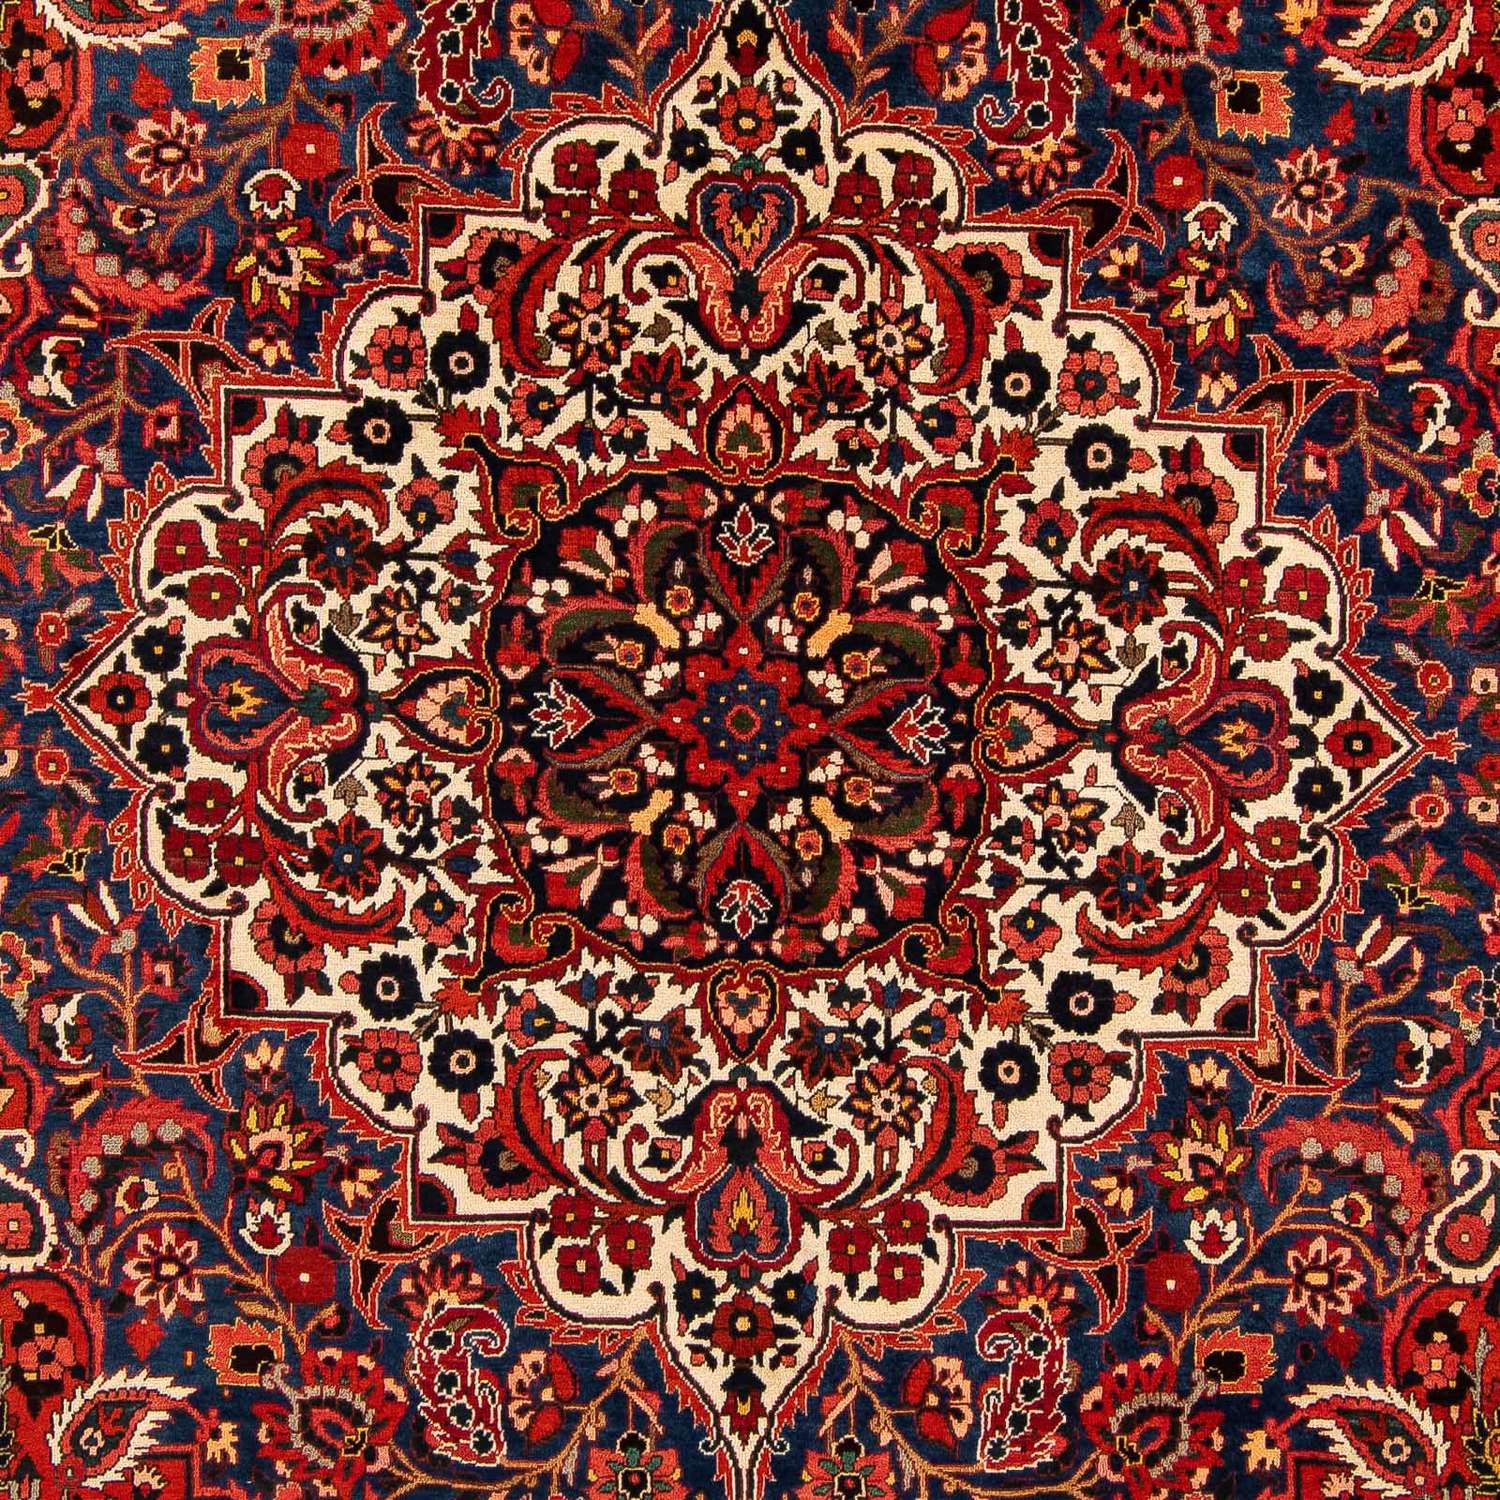 Tapis persan - Nomadic - 375 x 272 cm - rouge foncé